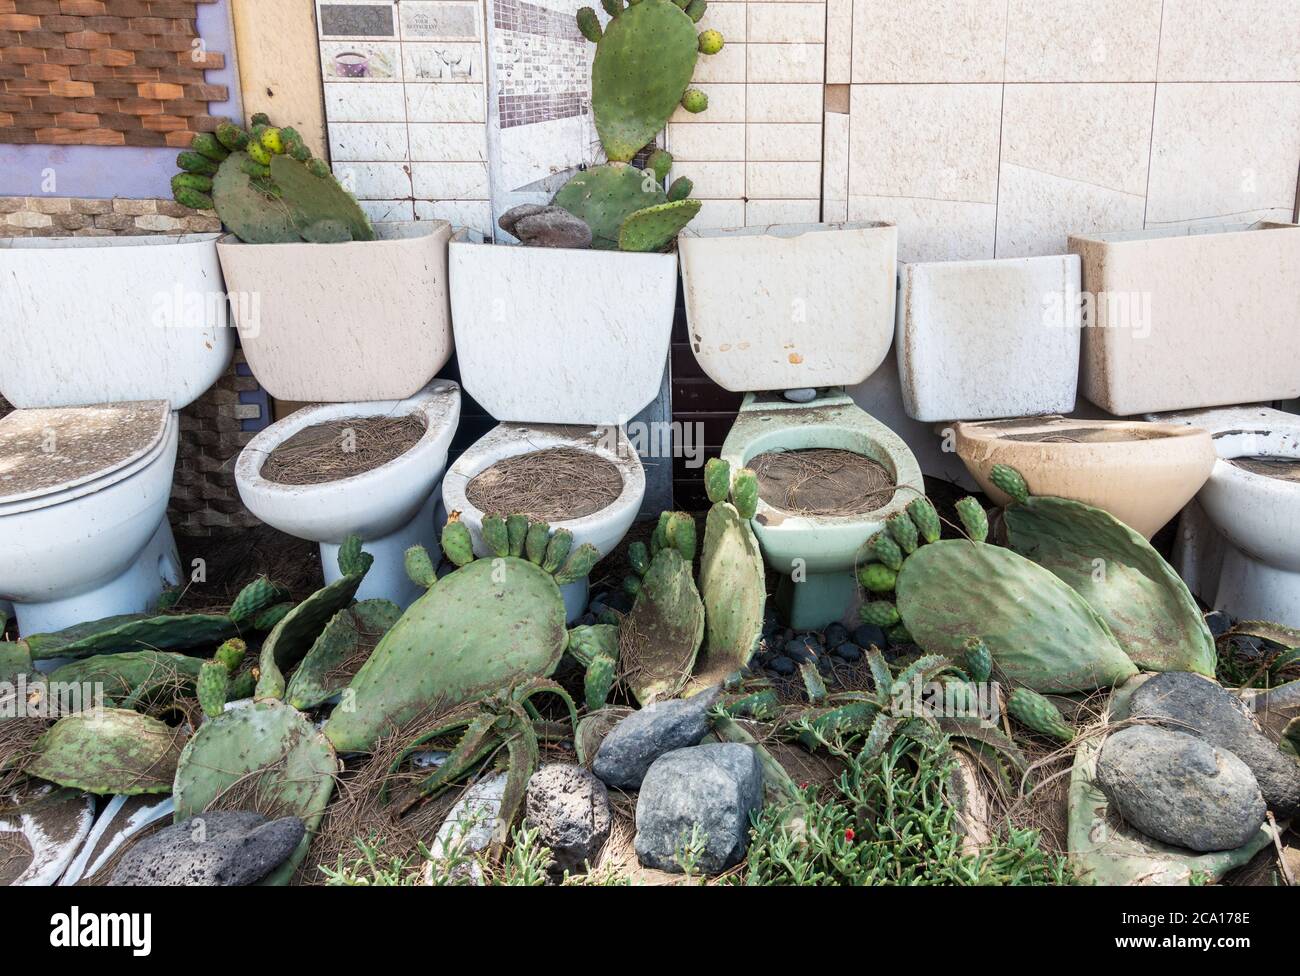 Unusual garden: Cactus planted in old toilets in garden in Spain Stock Photo